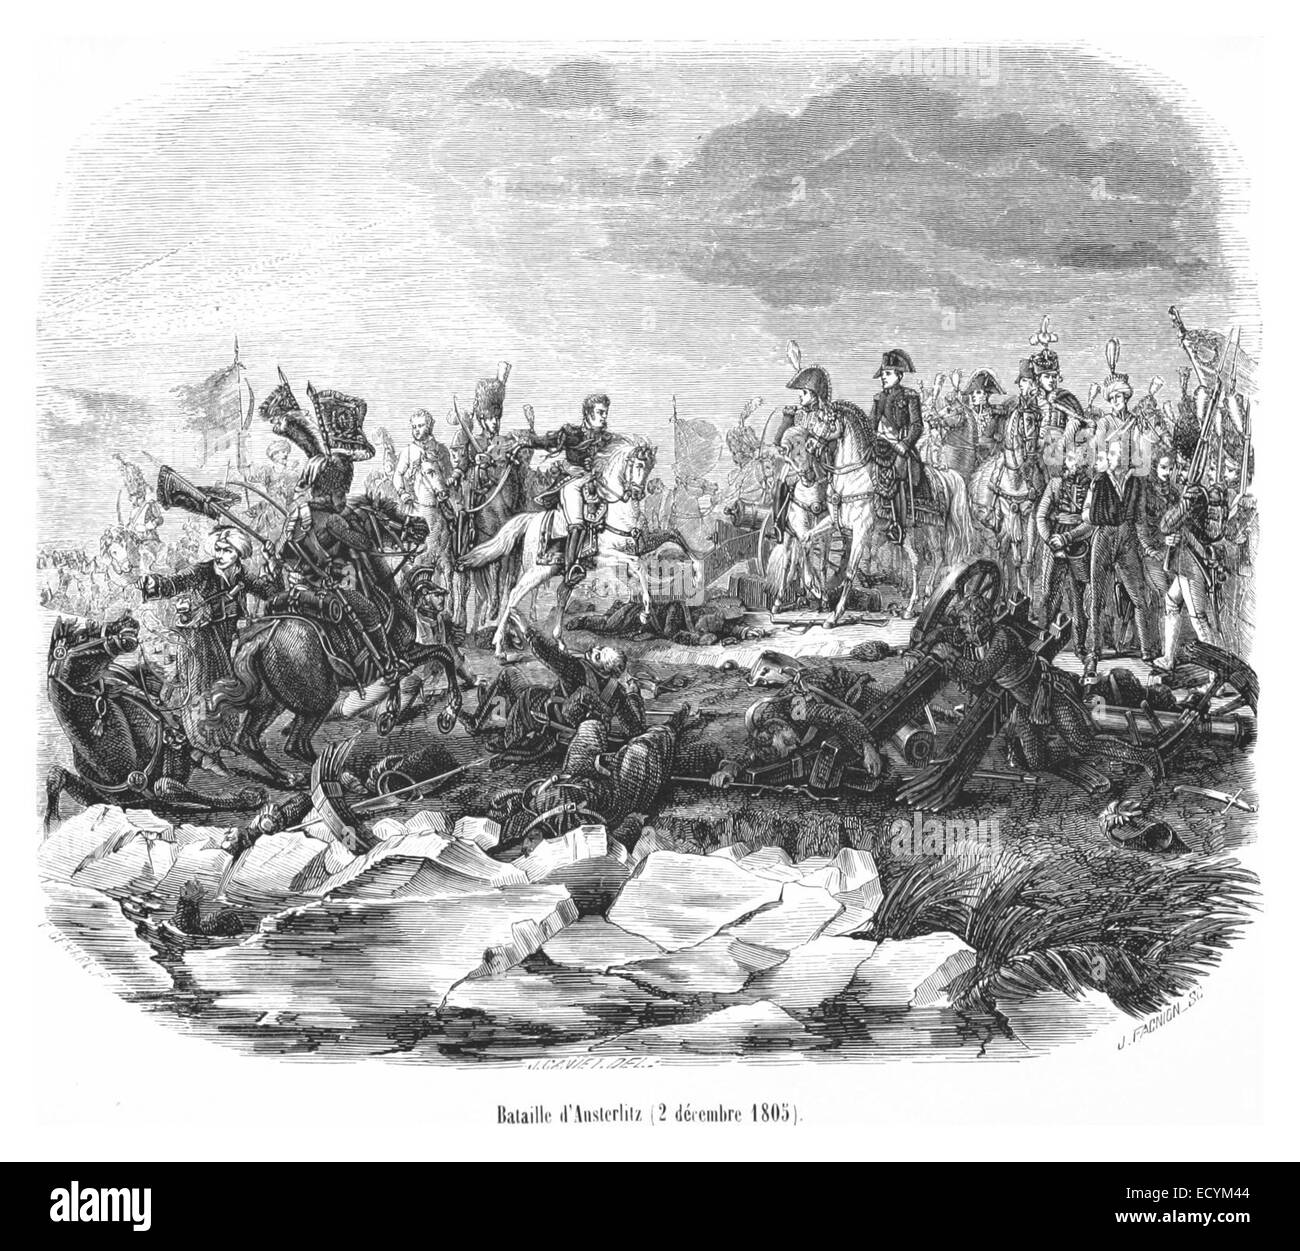 Bataille d'Austerlitz, 2 décembre 1805 Stock Photo